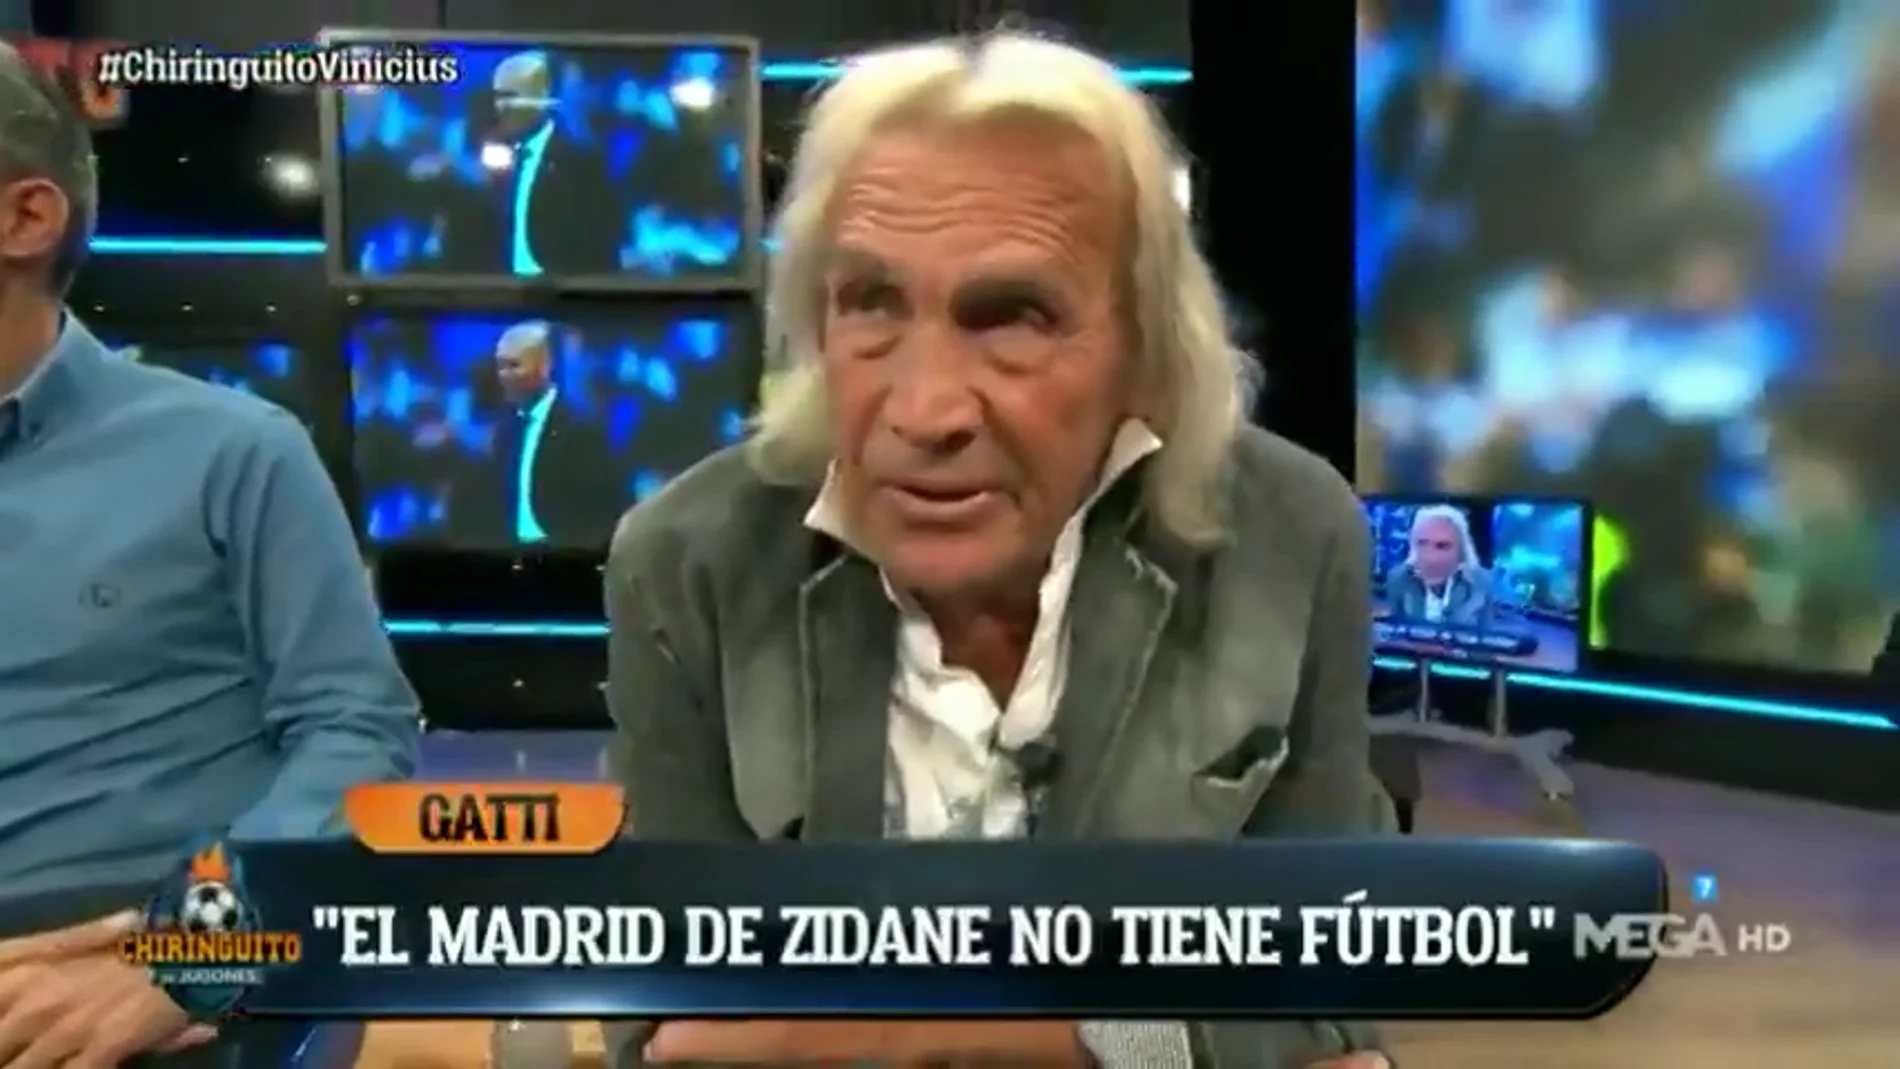 La dura crítica de Gatti contra Zidane: "No tiene idea de fútbol, no hizo nada cuando el Real Madrid ganó"